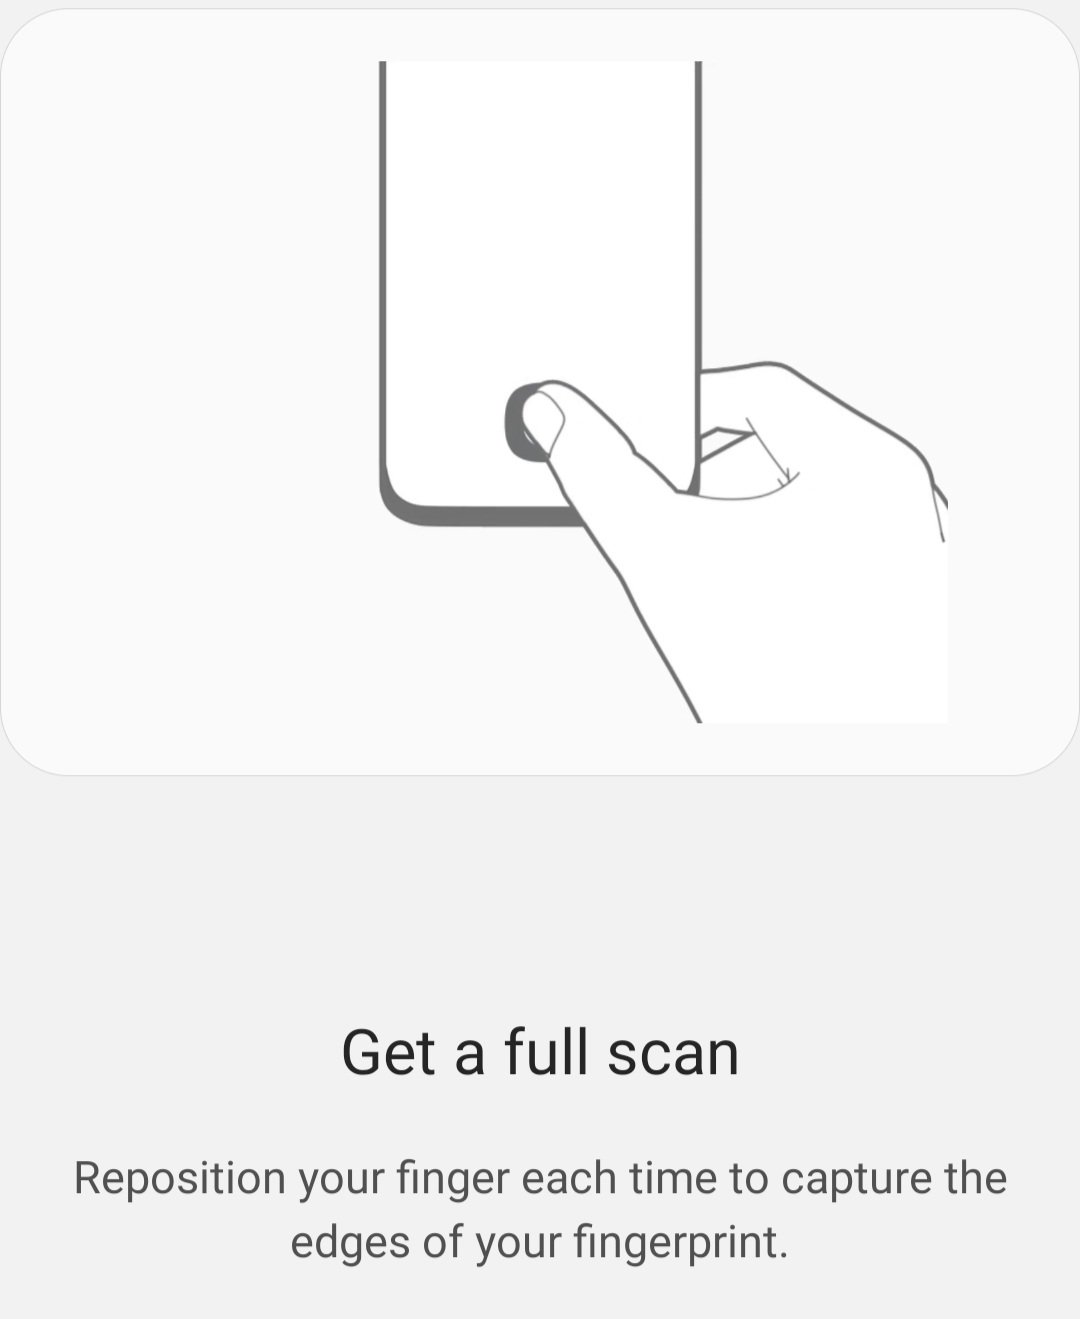 Galaxy S20 fingerprint sensor settings